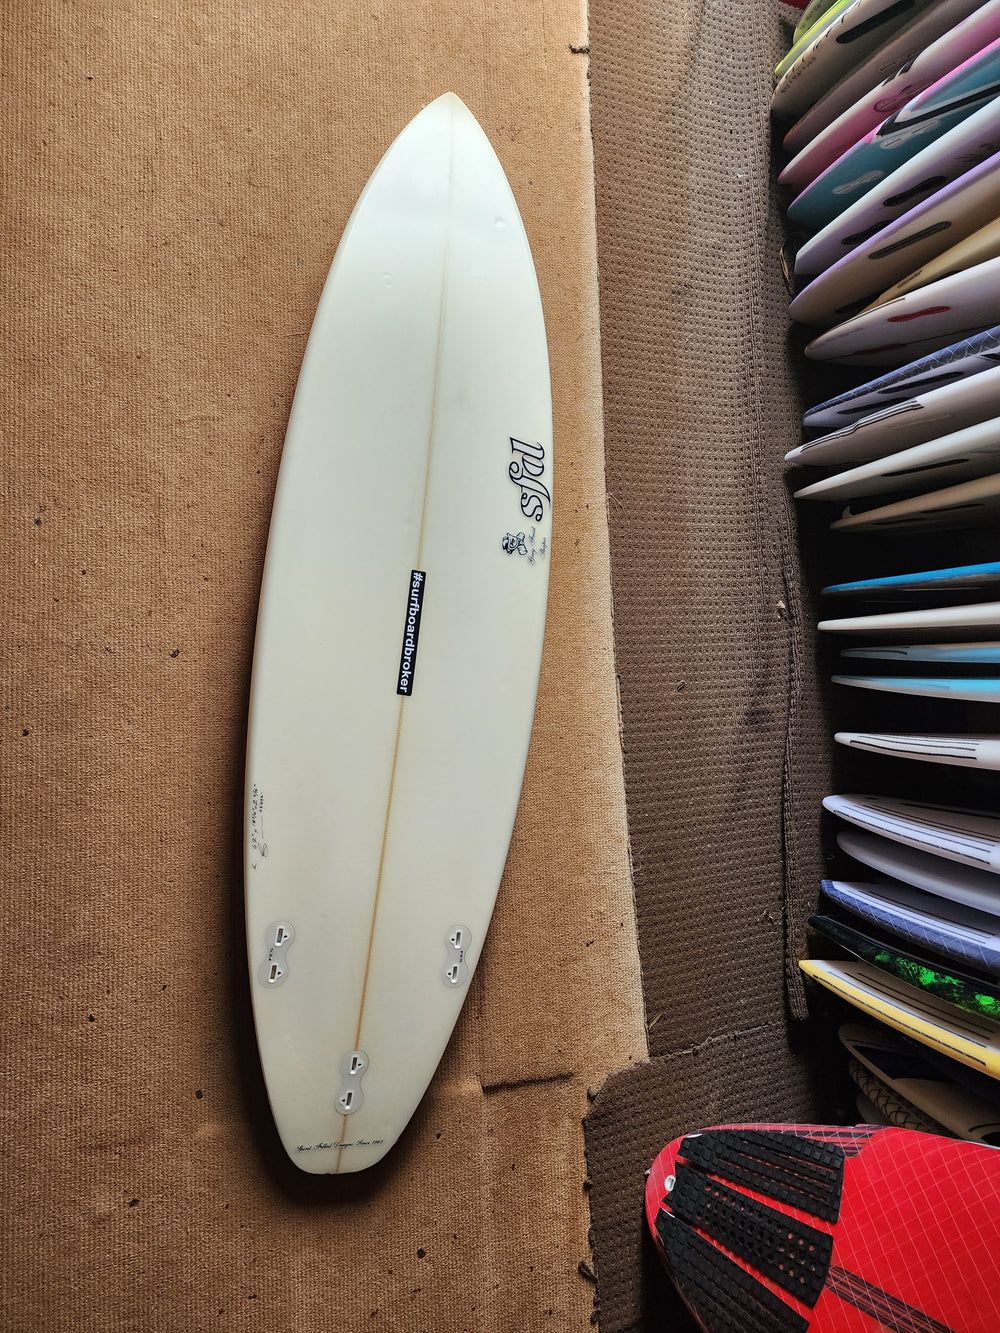 6'1 Sfd Surfboard